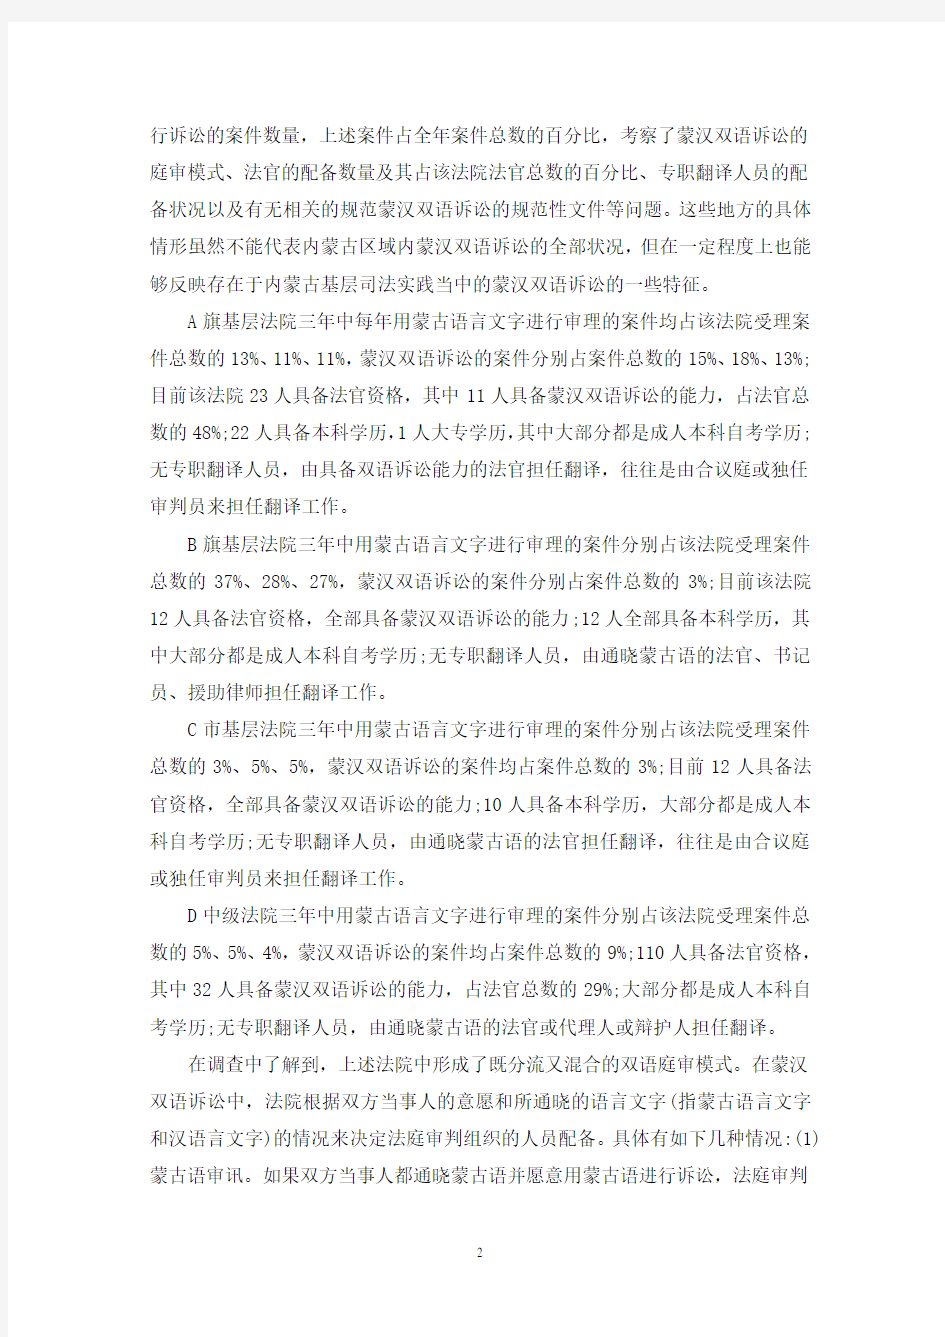 蒙汉双语诉讼程序性保障措施论文